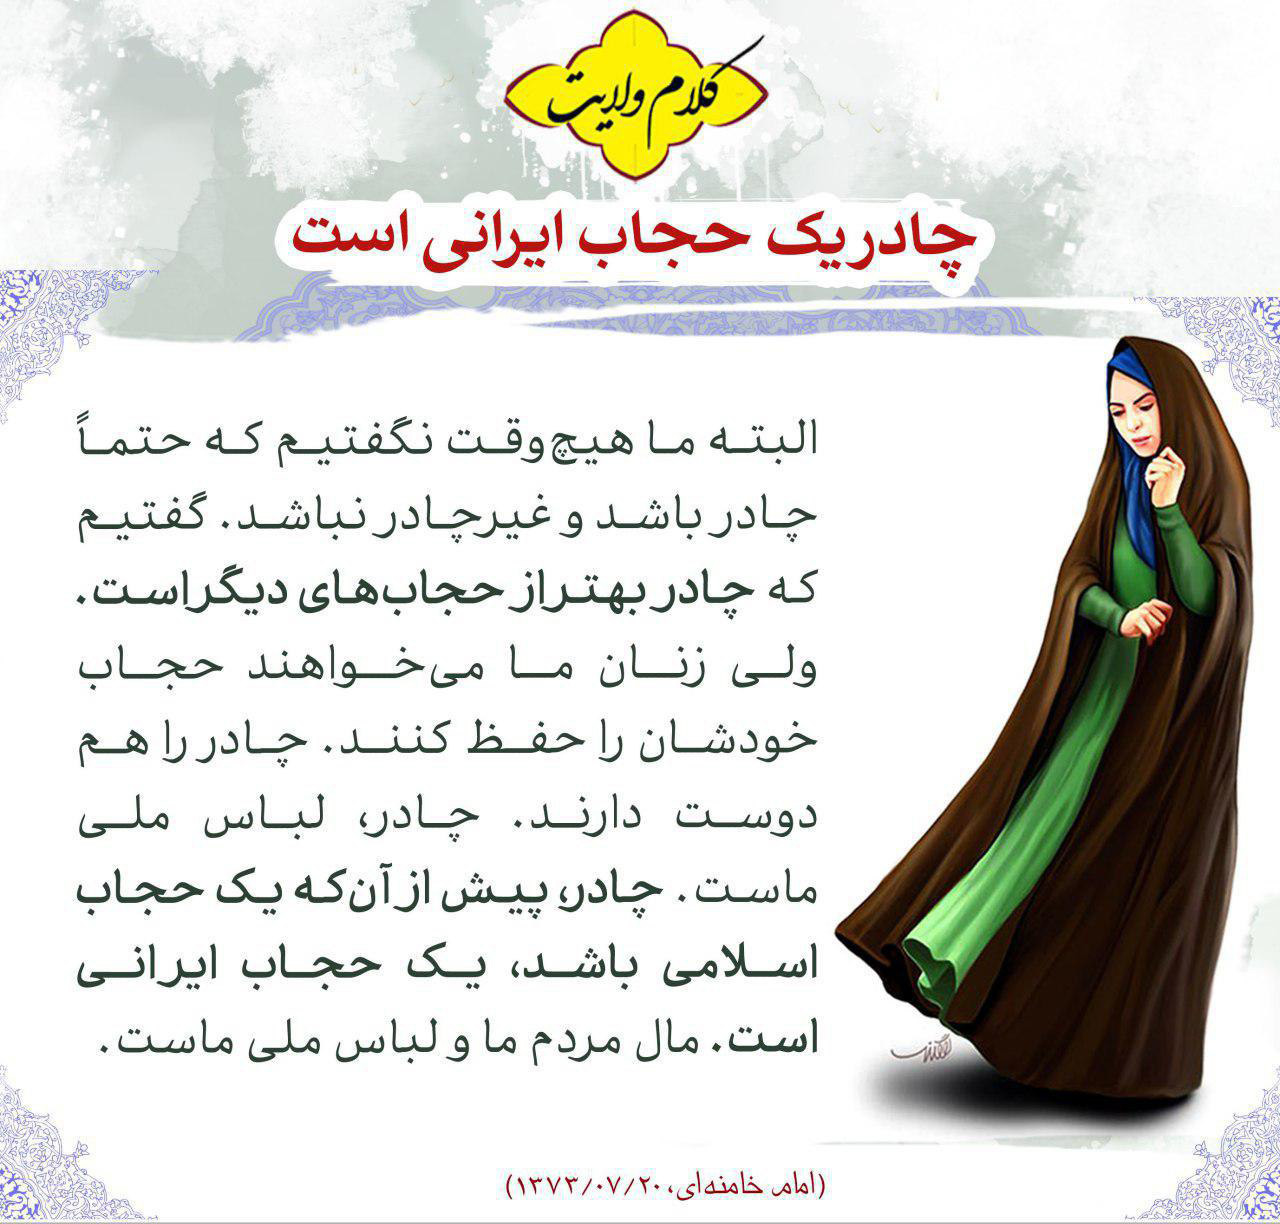 چادر یک حجاب ایرانی است